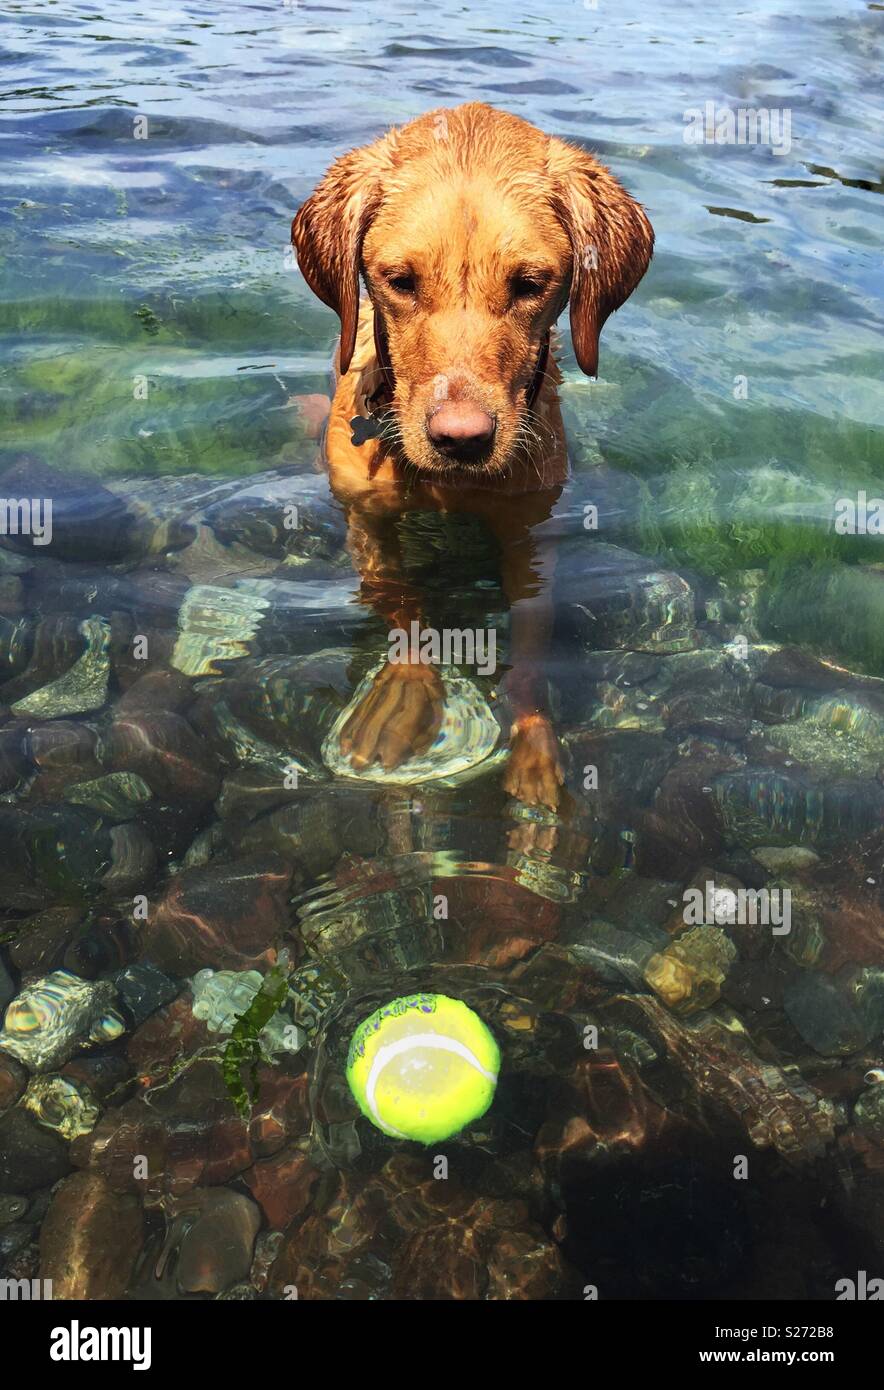 A Labrador retriever dog fetching a tennis ball in the ocean Stock Photo